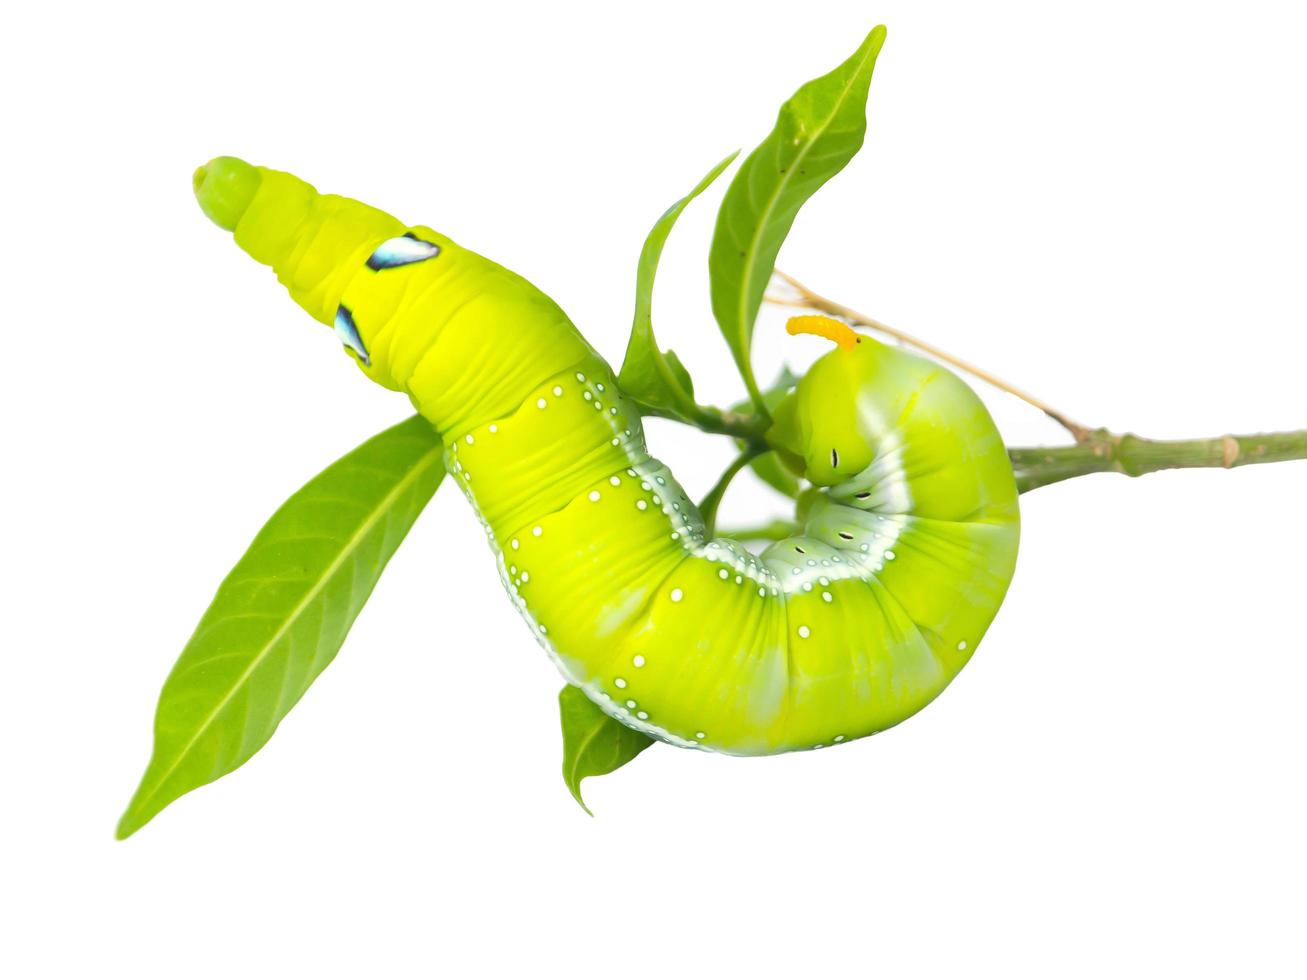 lagarta verde andando em close-up isolado no fundo branco. foto